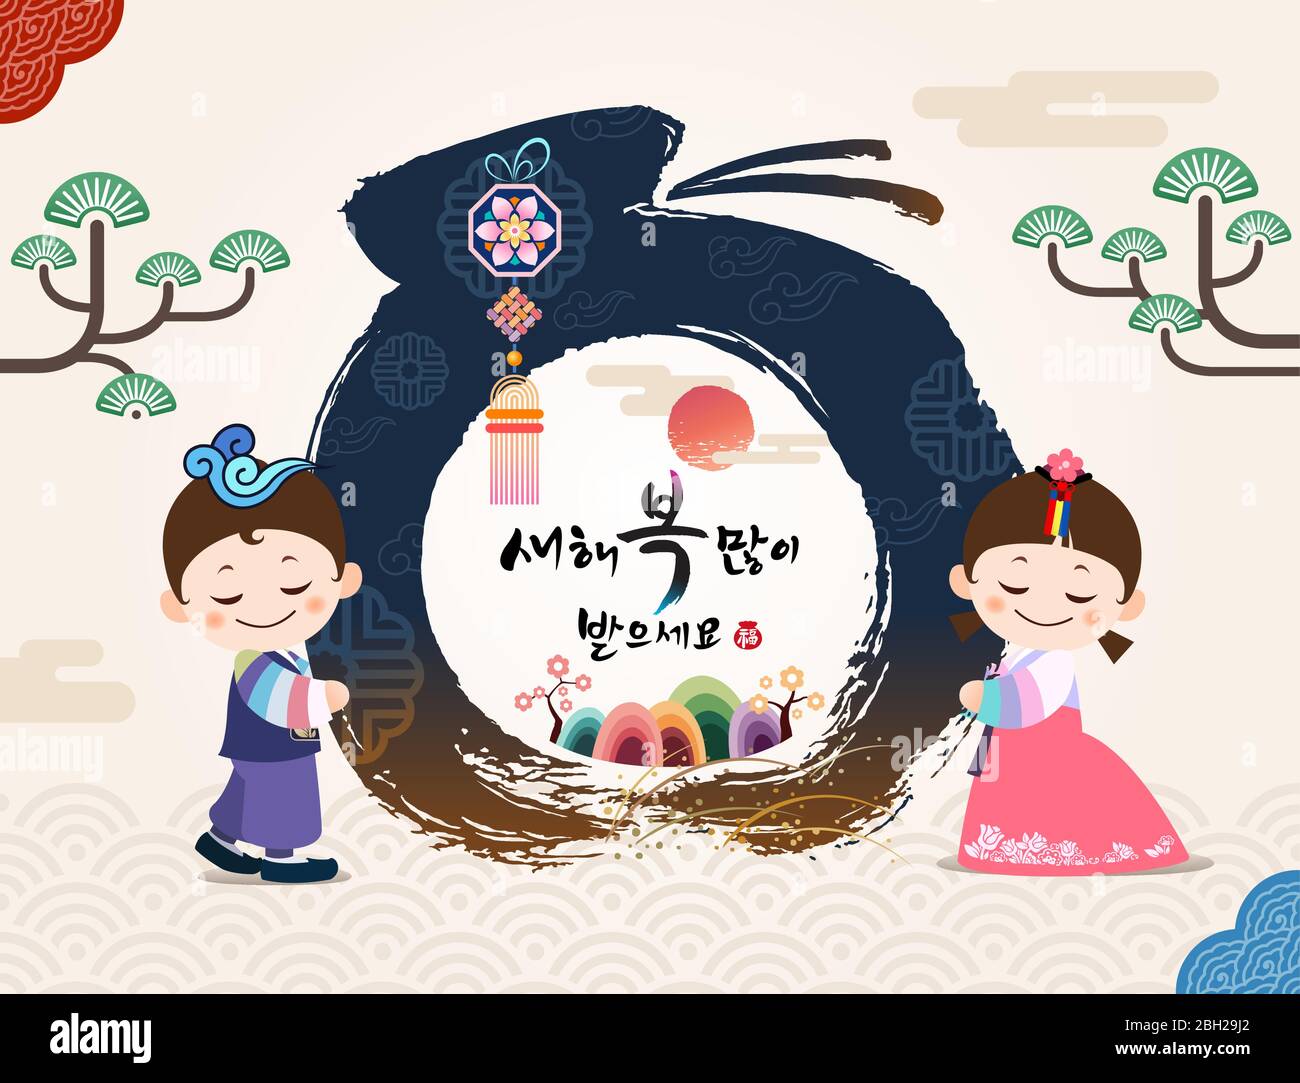 Frohes neues Jahr, Koreanisch Text Übersetzung: Frohes neues Jahr Kalligraphie und traditionelle koreanische Glückstasche, Kinder Stock Vektor